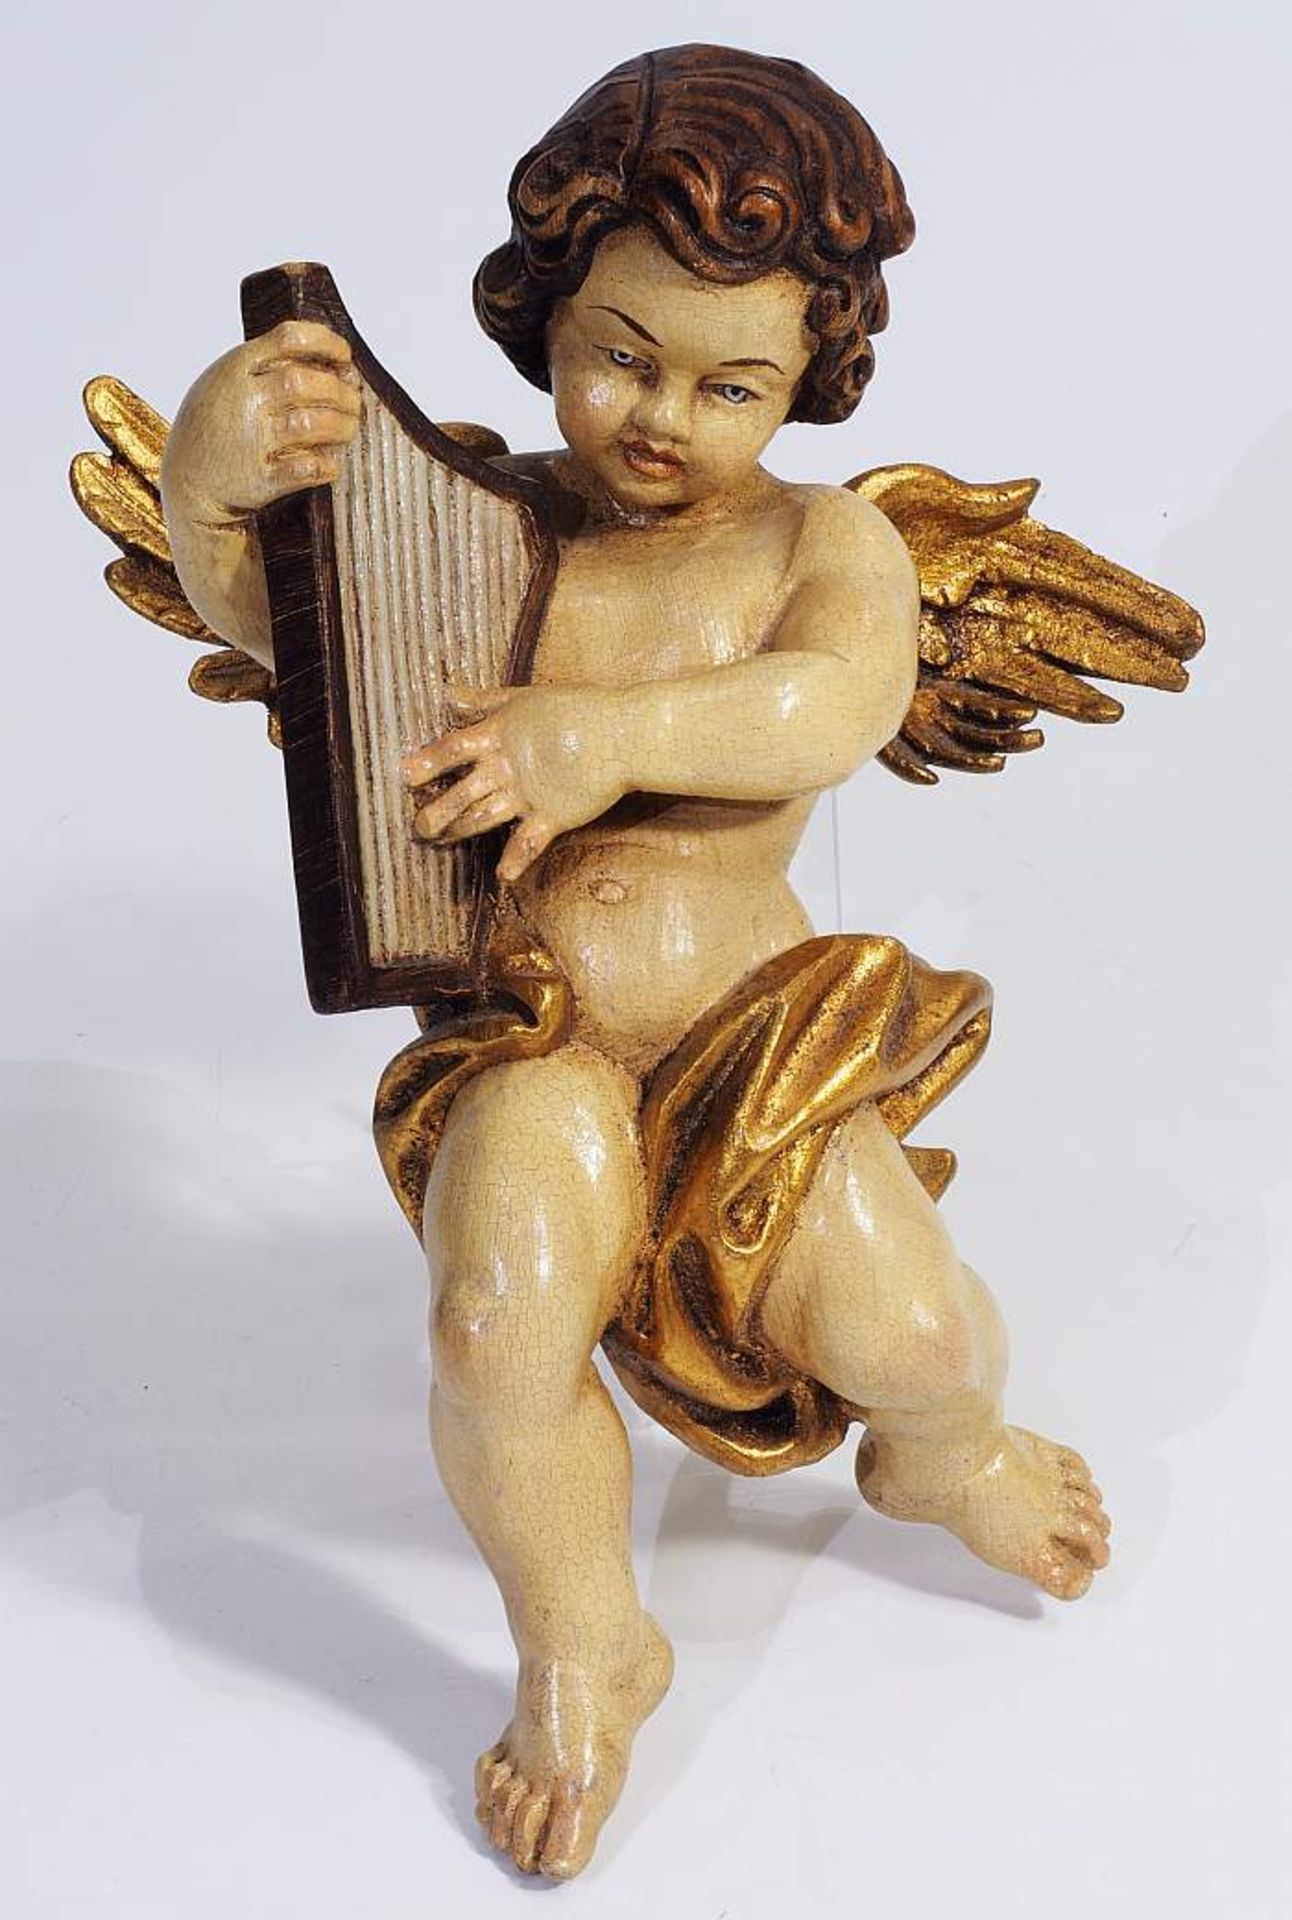 Geflügelter Engel, Harfe spielend.Geflügelter Engel, Harfe spielend. 20. Jahrhundert. Holz farbig